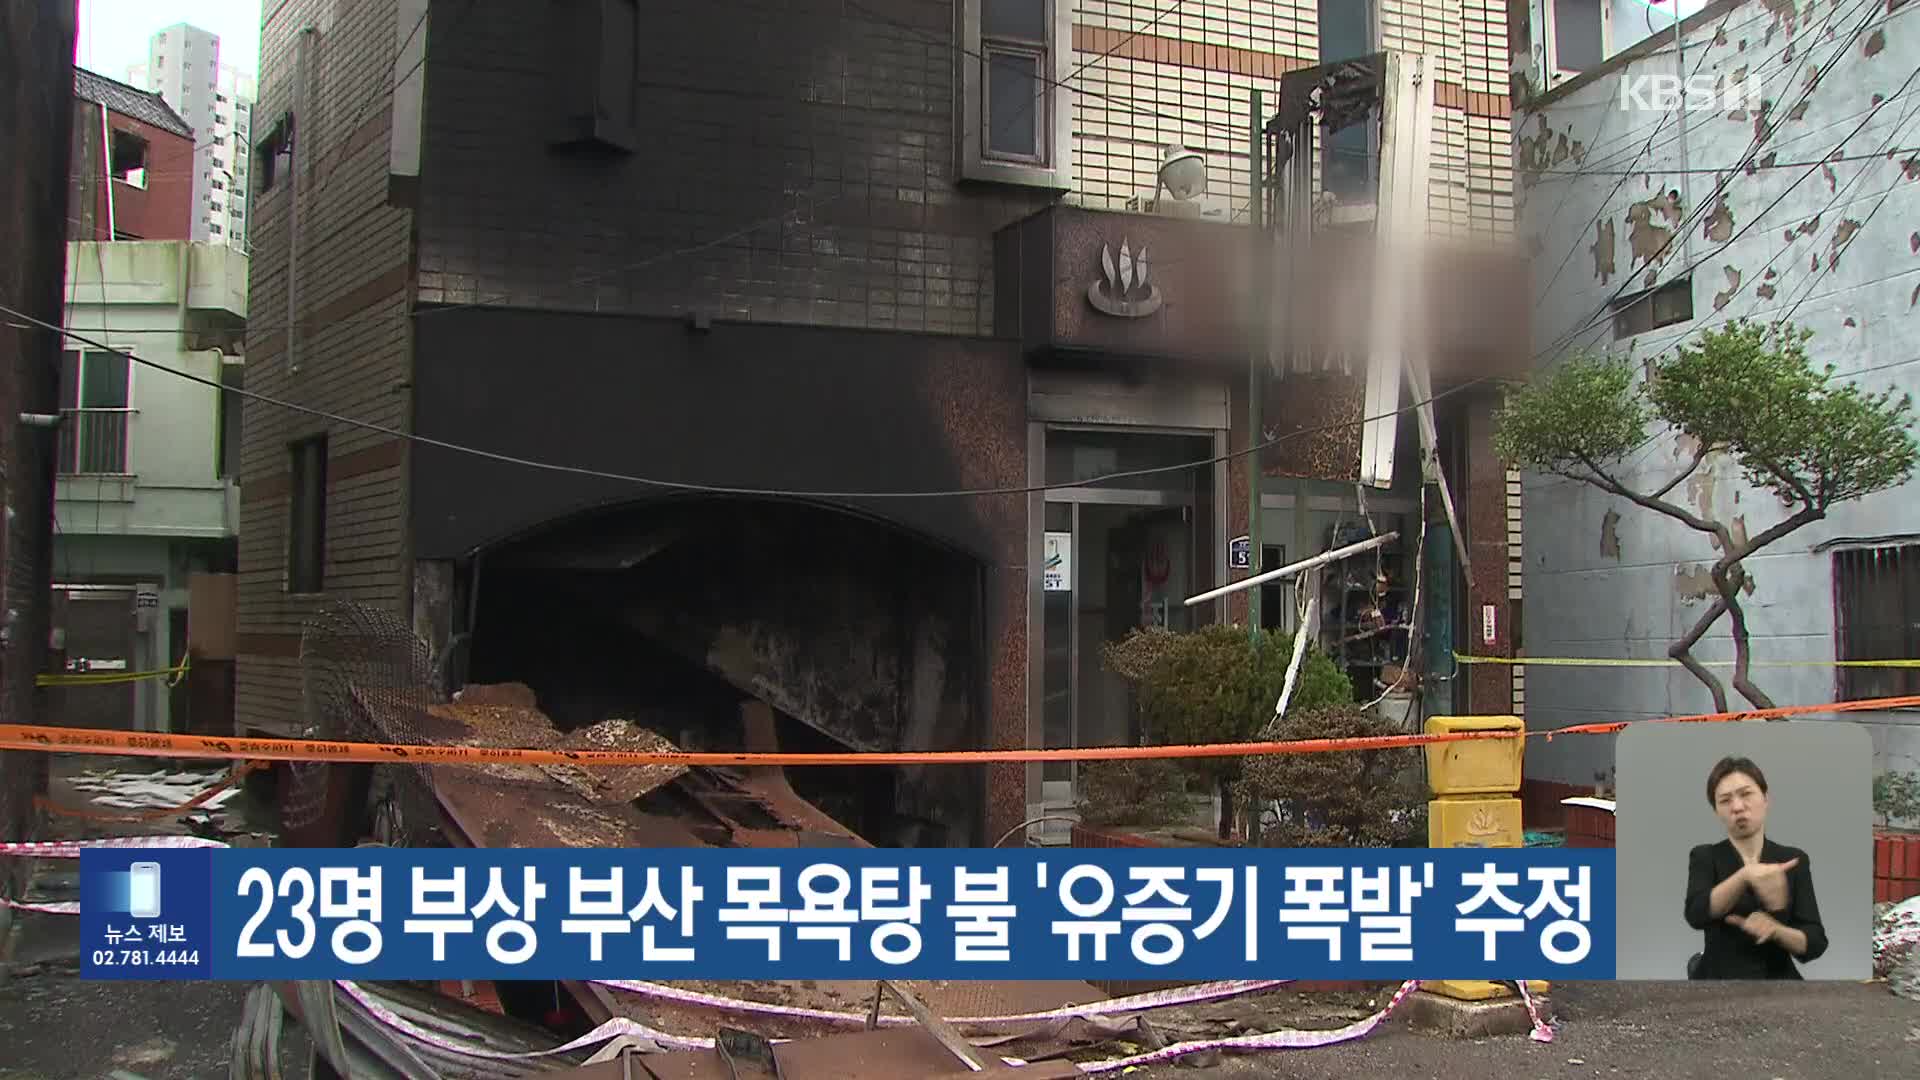 23명 부상 부산 목욕탕 불 ‘유증기 폭발’ 추정